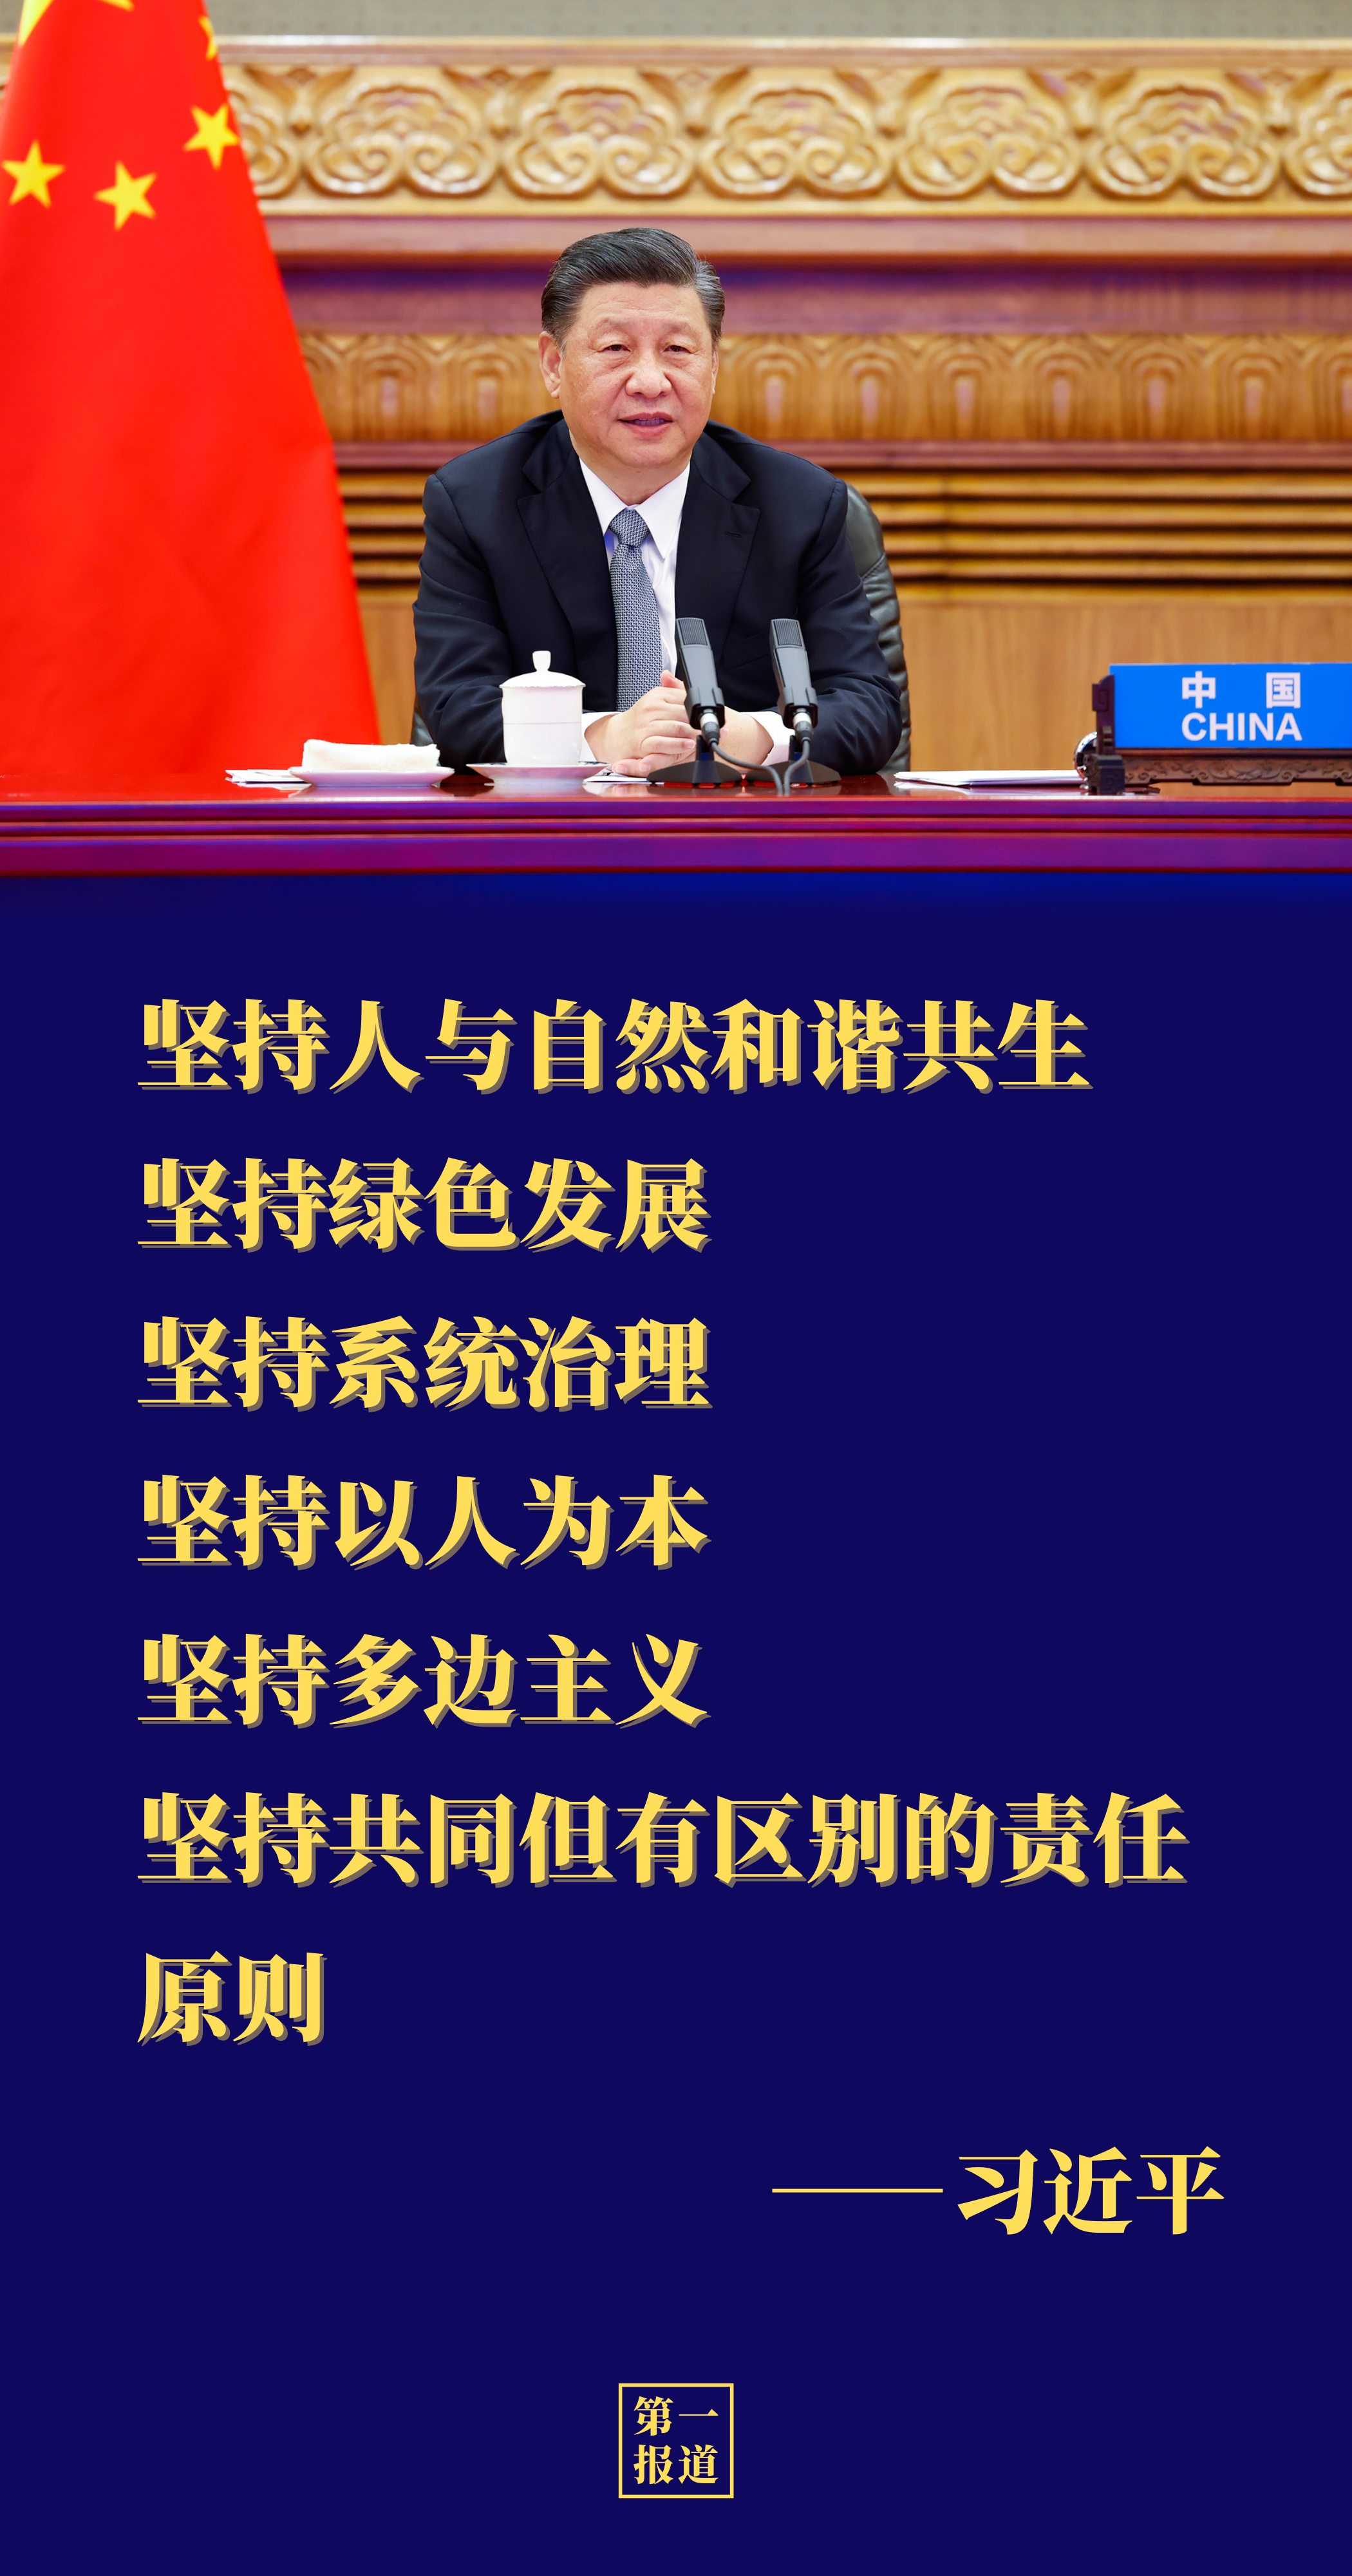 第一报道丨4月中国元首外交为世界计